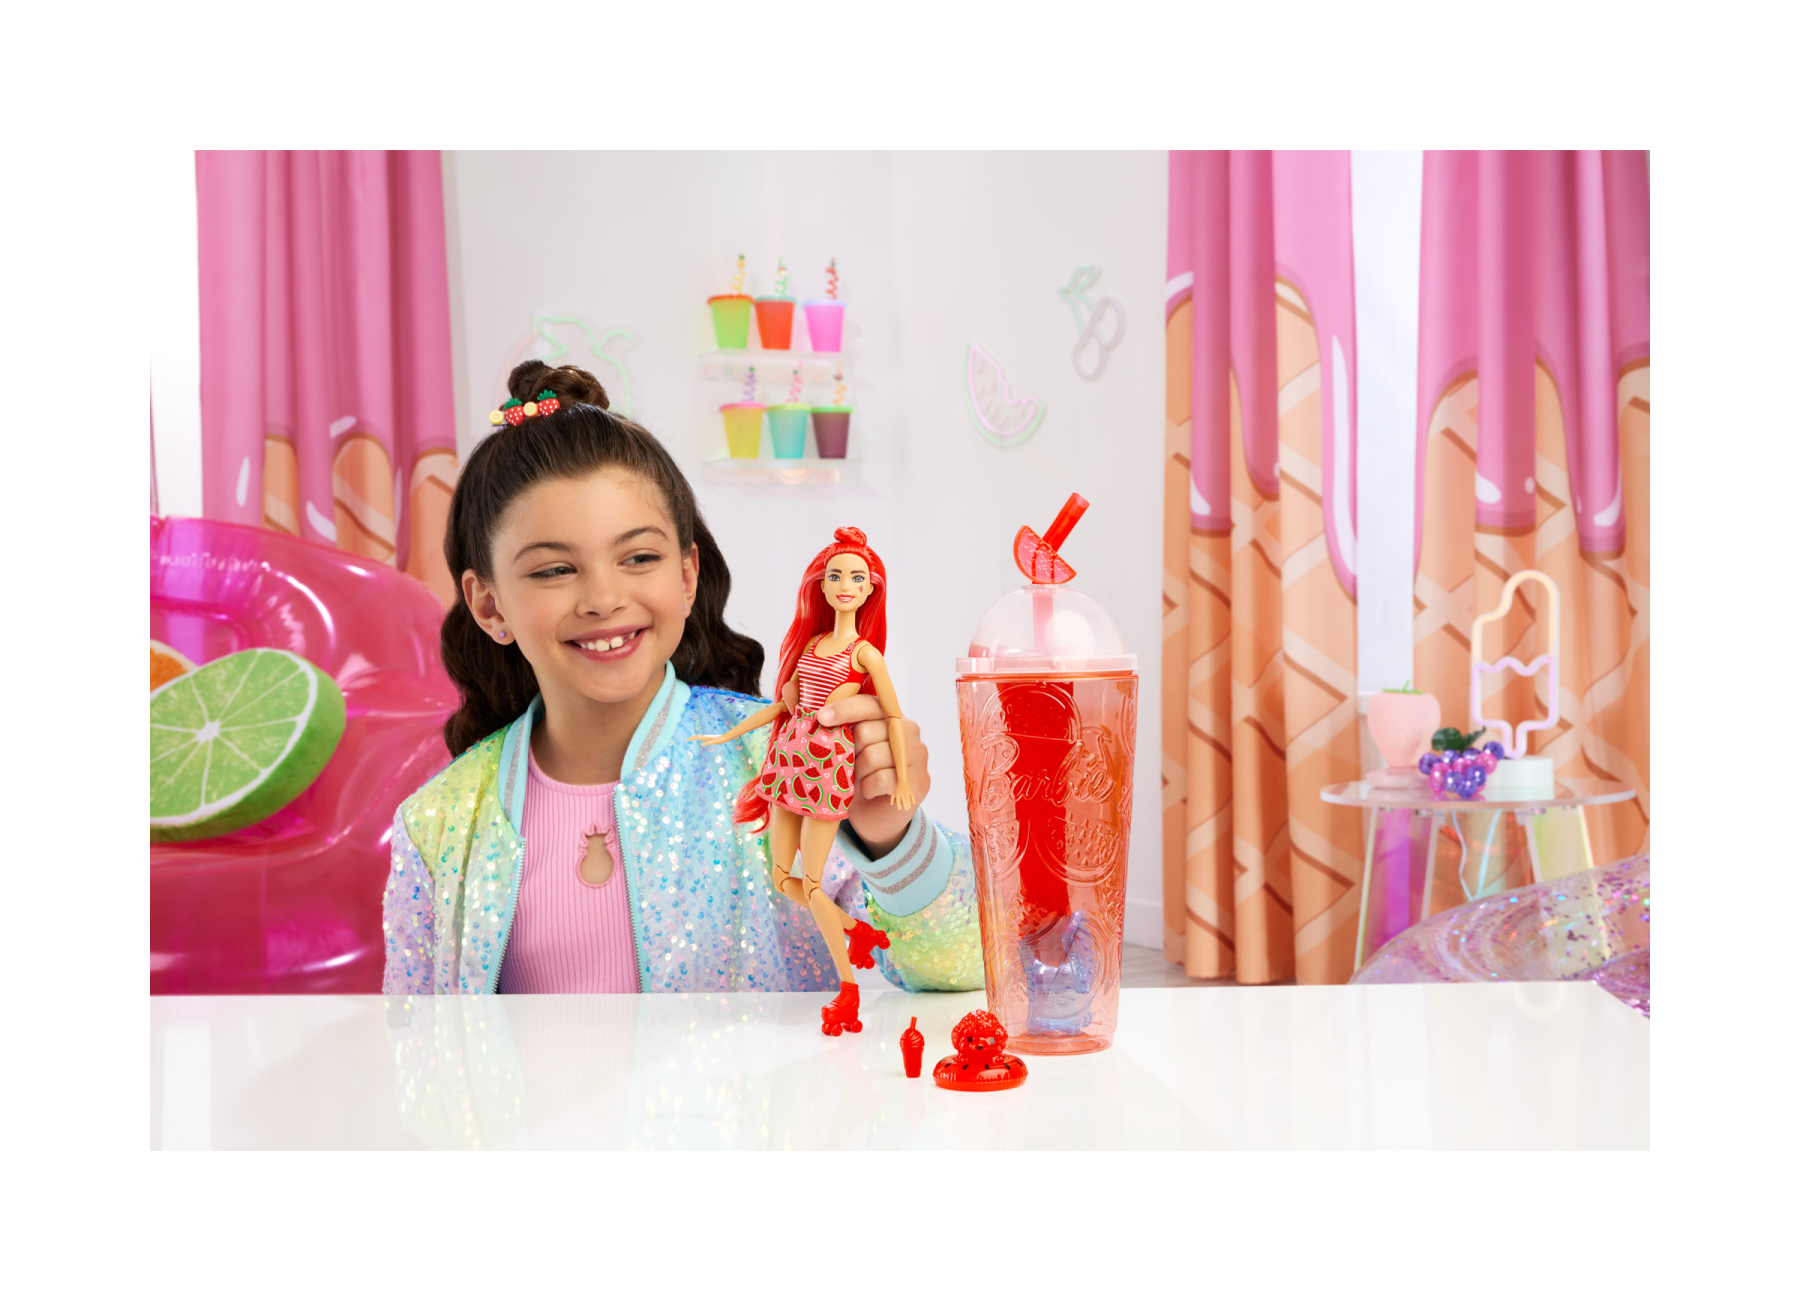 Barbie - Pop Reveal Serie Frutta, Bambola A Tema Spremuta Di Anguria, da Collezione - Barbie